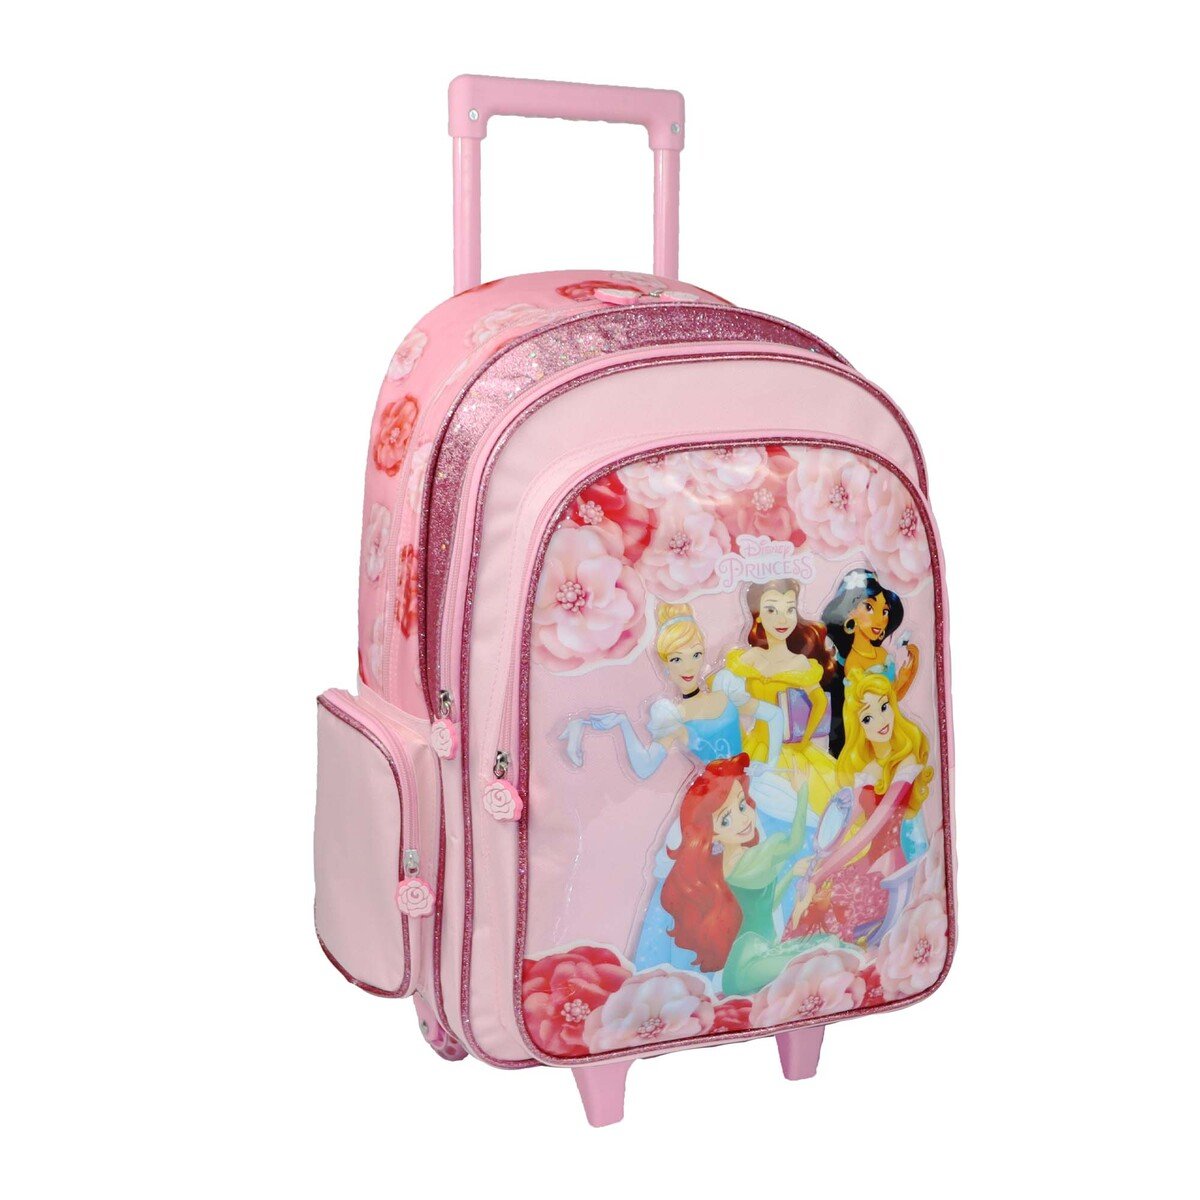 Princess School Trolley Bag 6899200230 18inch